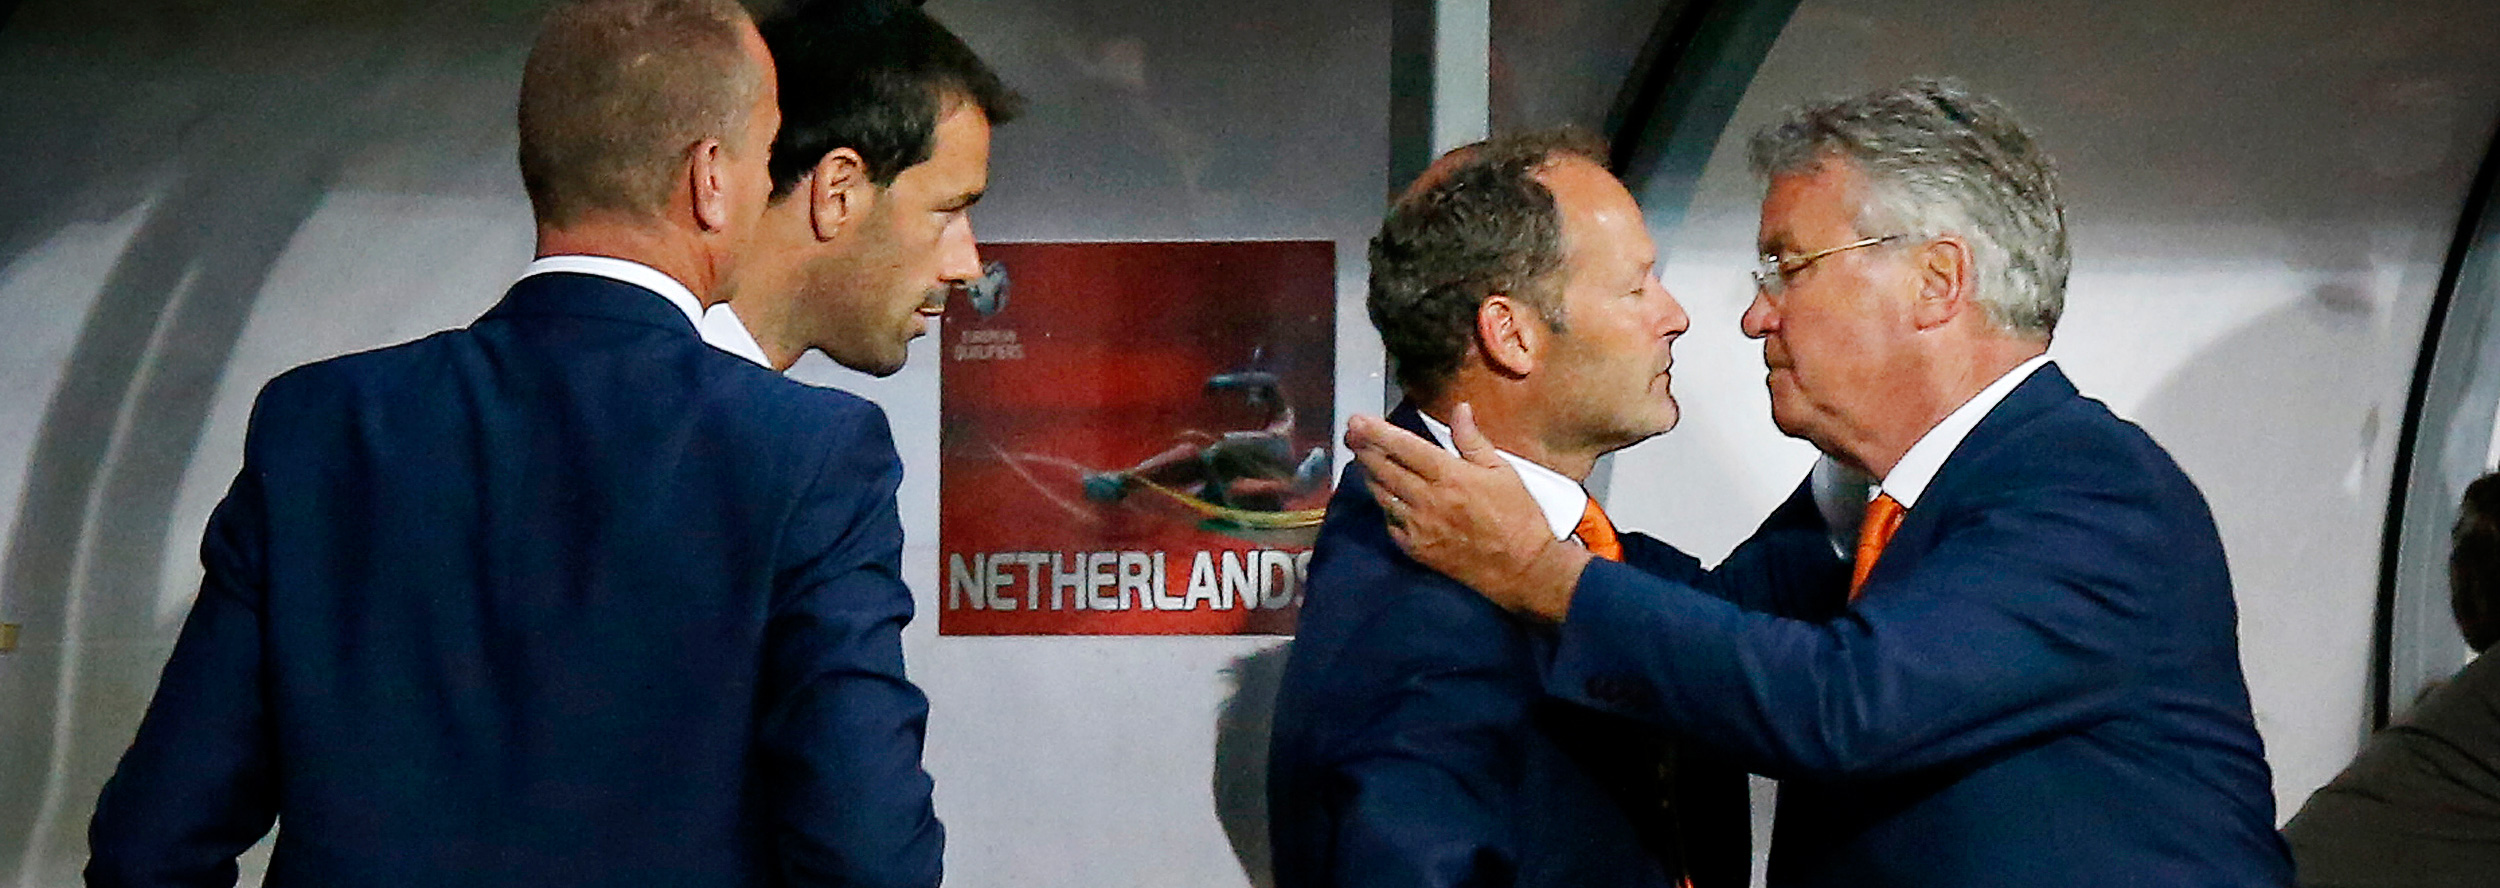 Blijdschap en opluchting bij Hiddink en zijn assistenten. Oranje wint benauwd in Letland. Het blijkt echter de laatste interland van Hiddink.